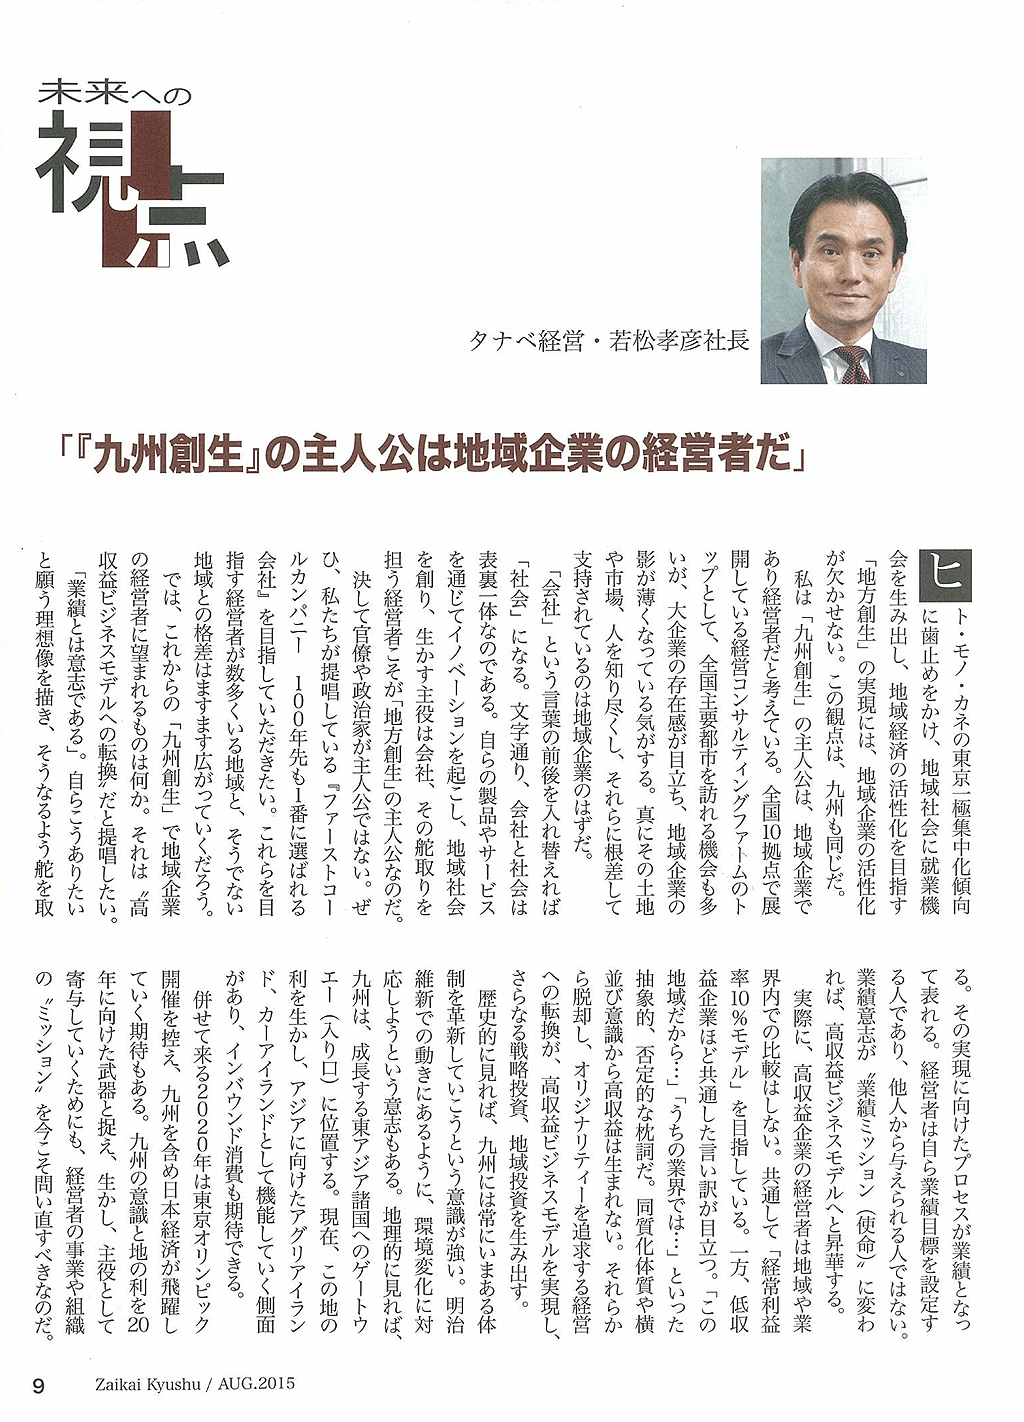 代表取締役社長 若松 孝彦が財界九州に取り上げられました。